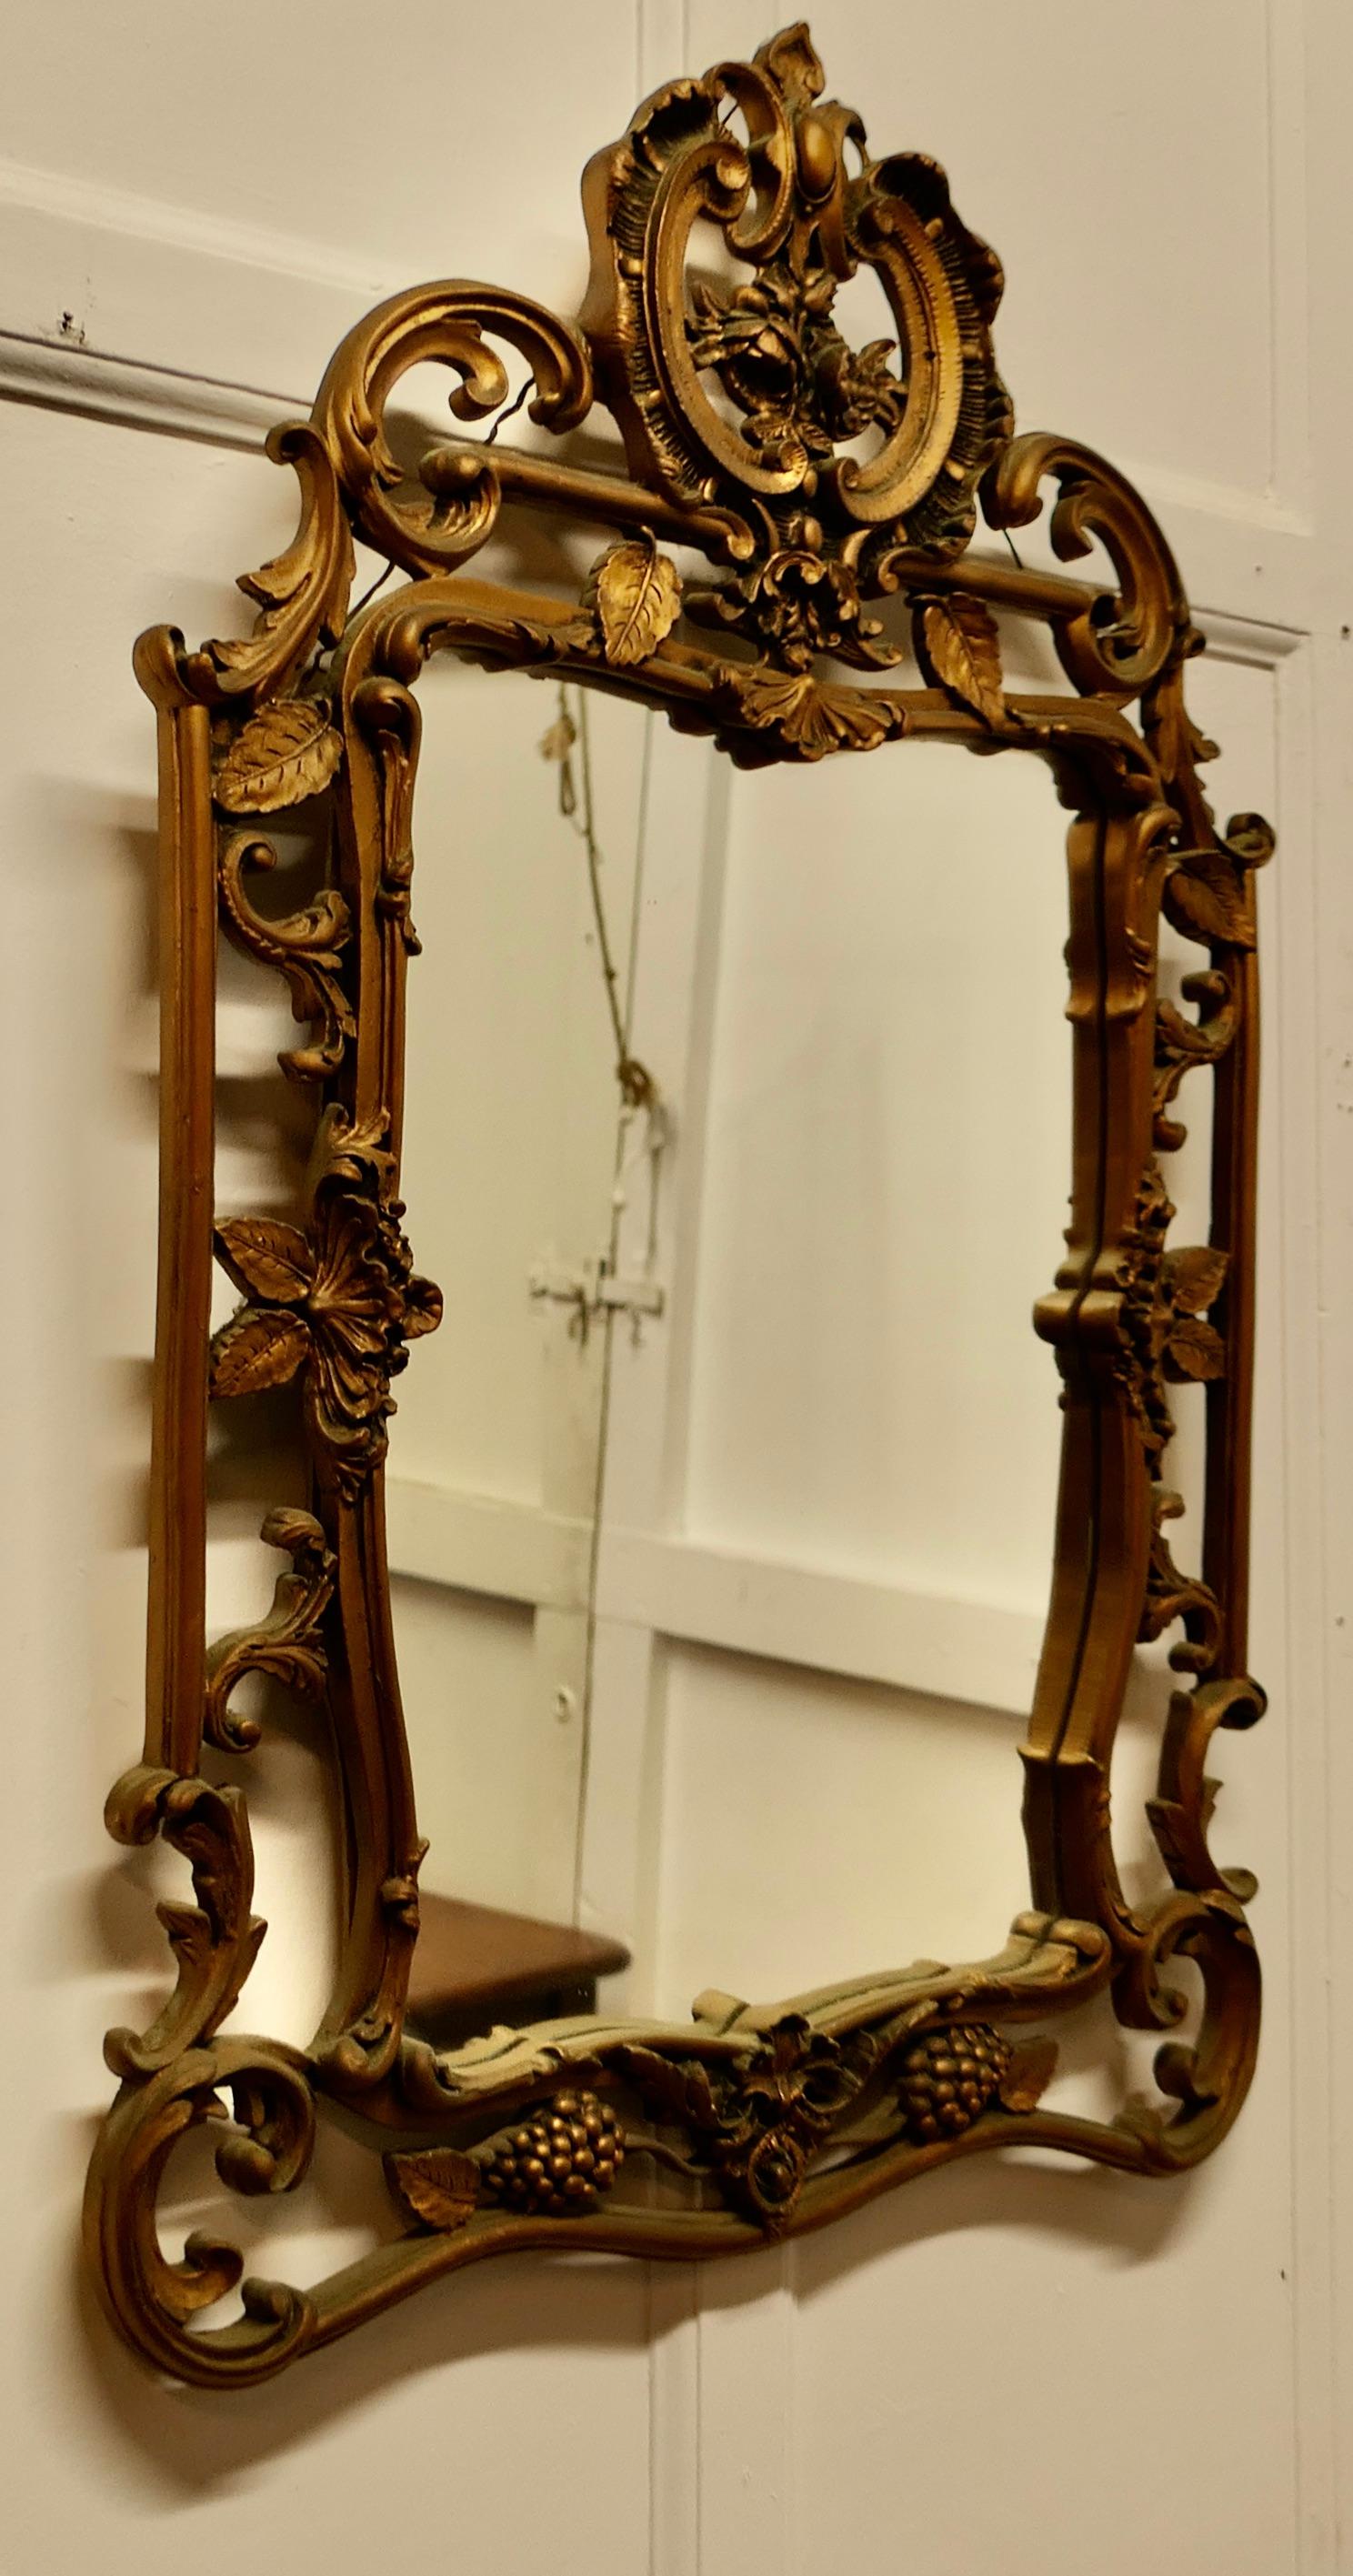 Aufwändiger Atsonea Rokoko vergoldeter Wandspiegel

Der Spiegel ist im Rokoko-Stil mit einem breiten durchbrochenen vergoldeten Rahmen dekoriert, hat es eine große Schnecke Design auf der Oberseite
Das Spiegelglas ist original und in gutem Zustand